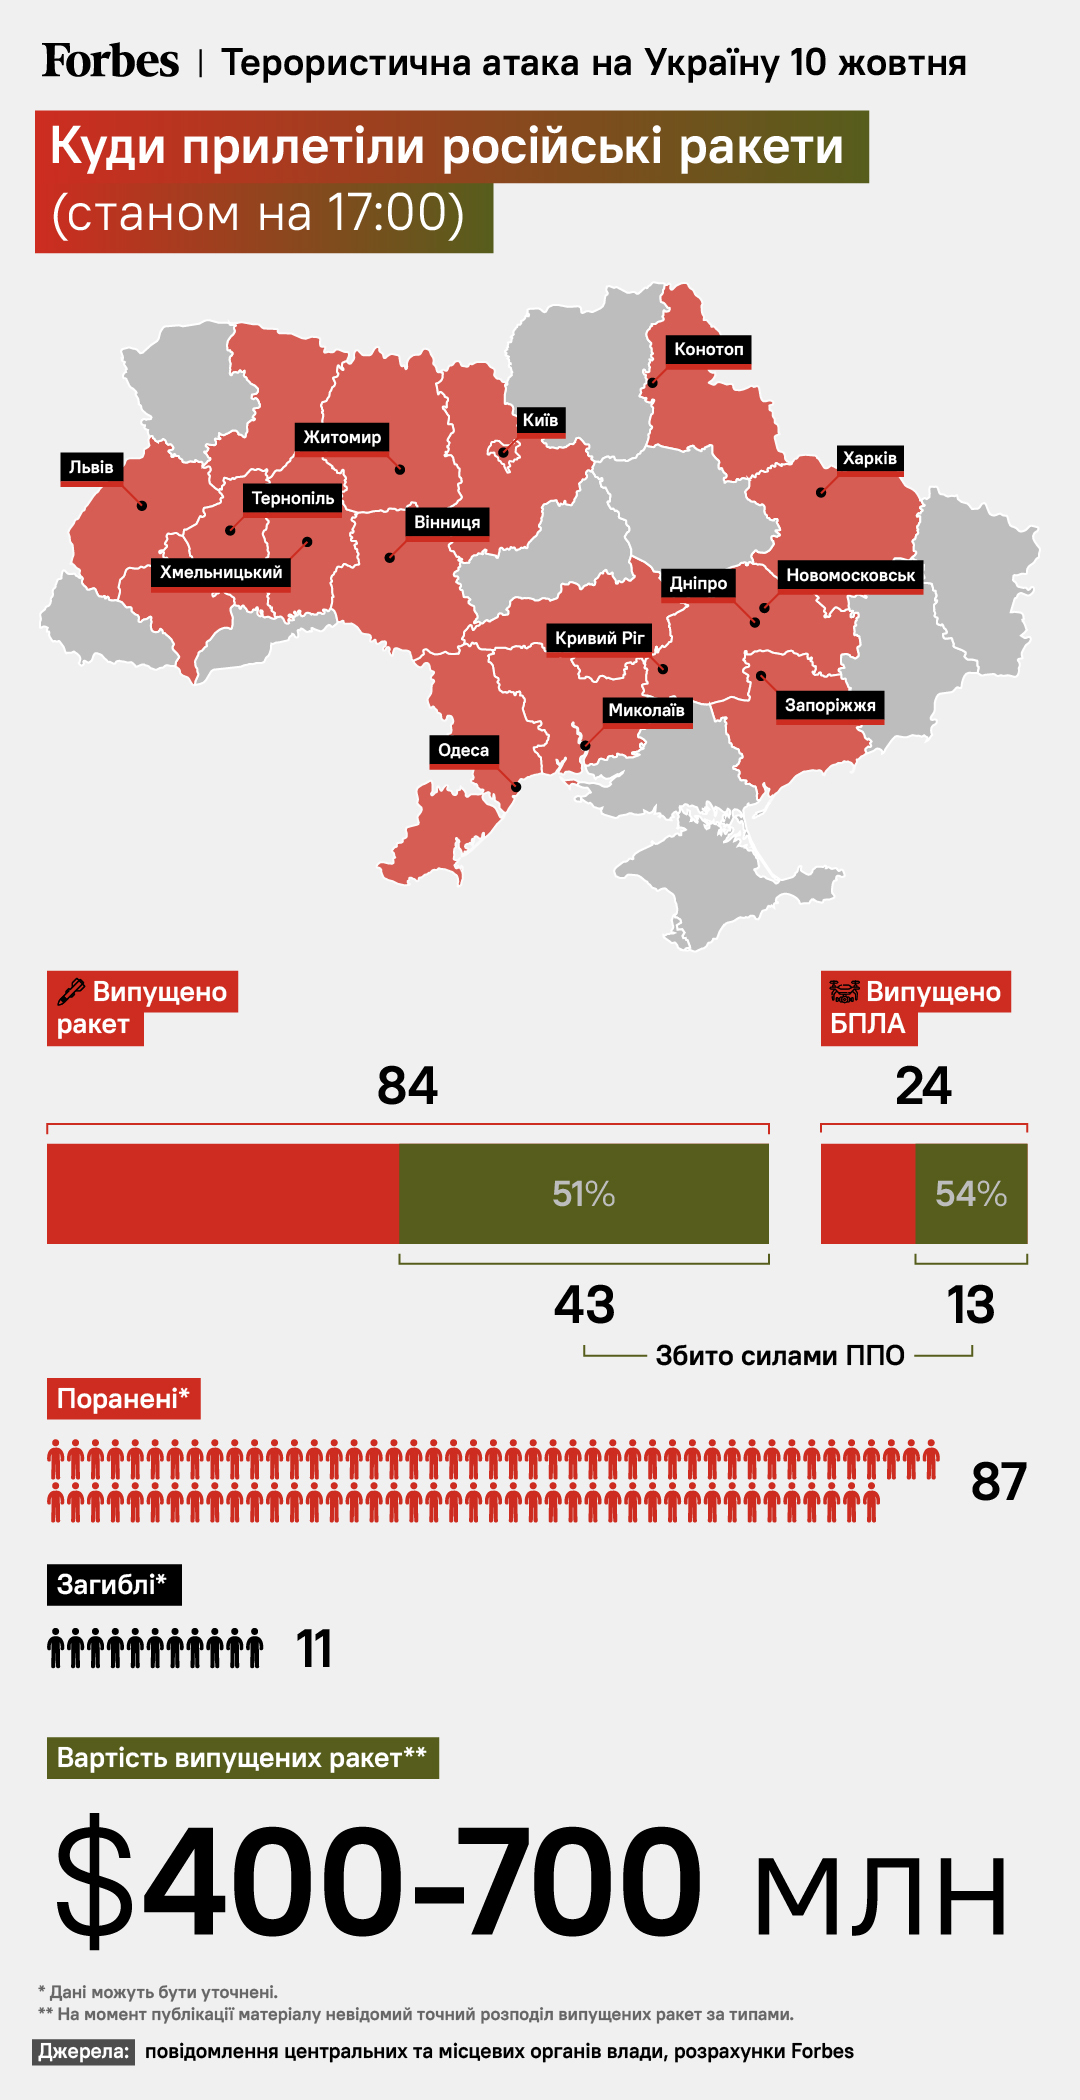 Стало відомо скільки коштувала Росії терористична атака по Україні 10 жовтня - фото 2